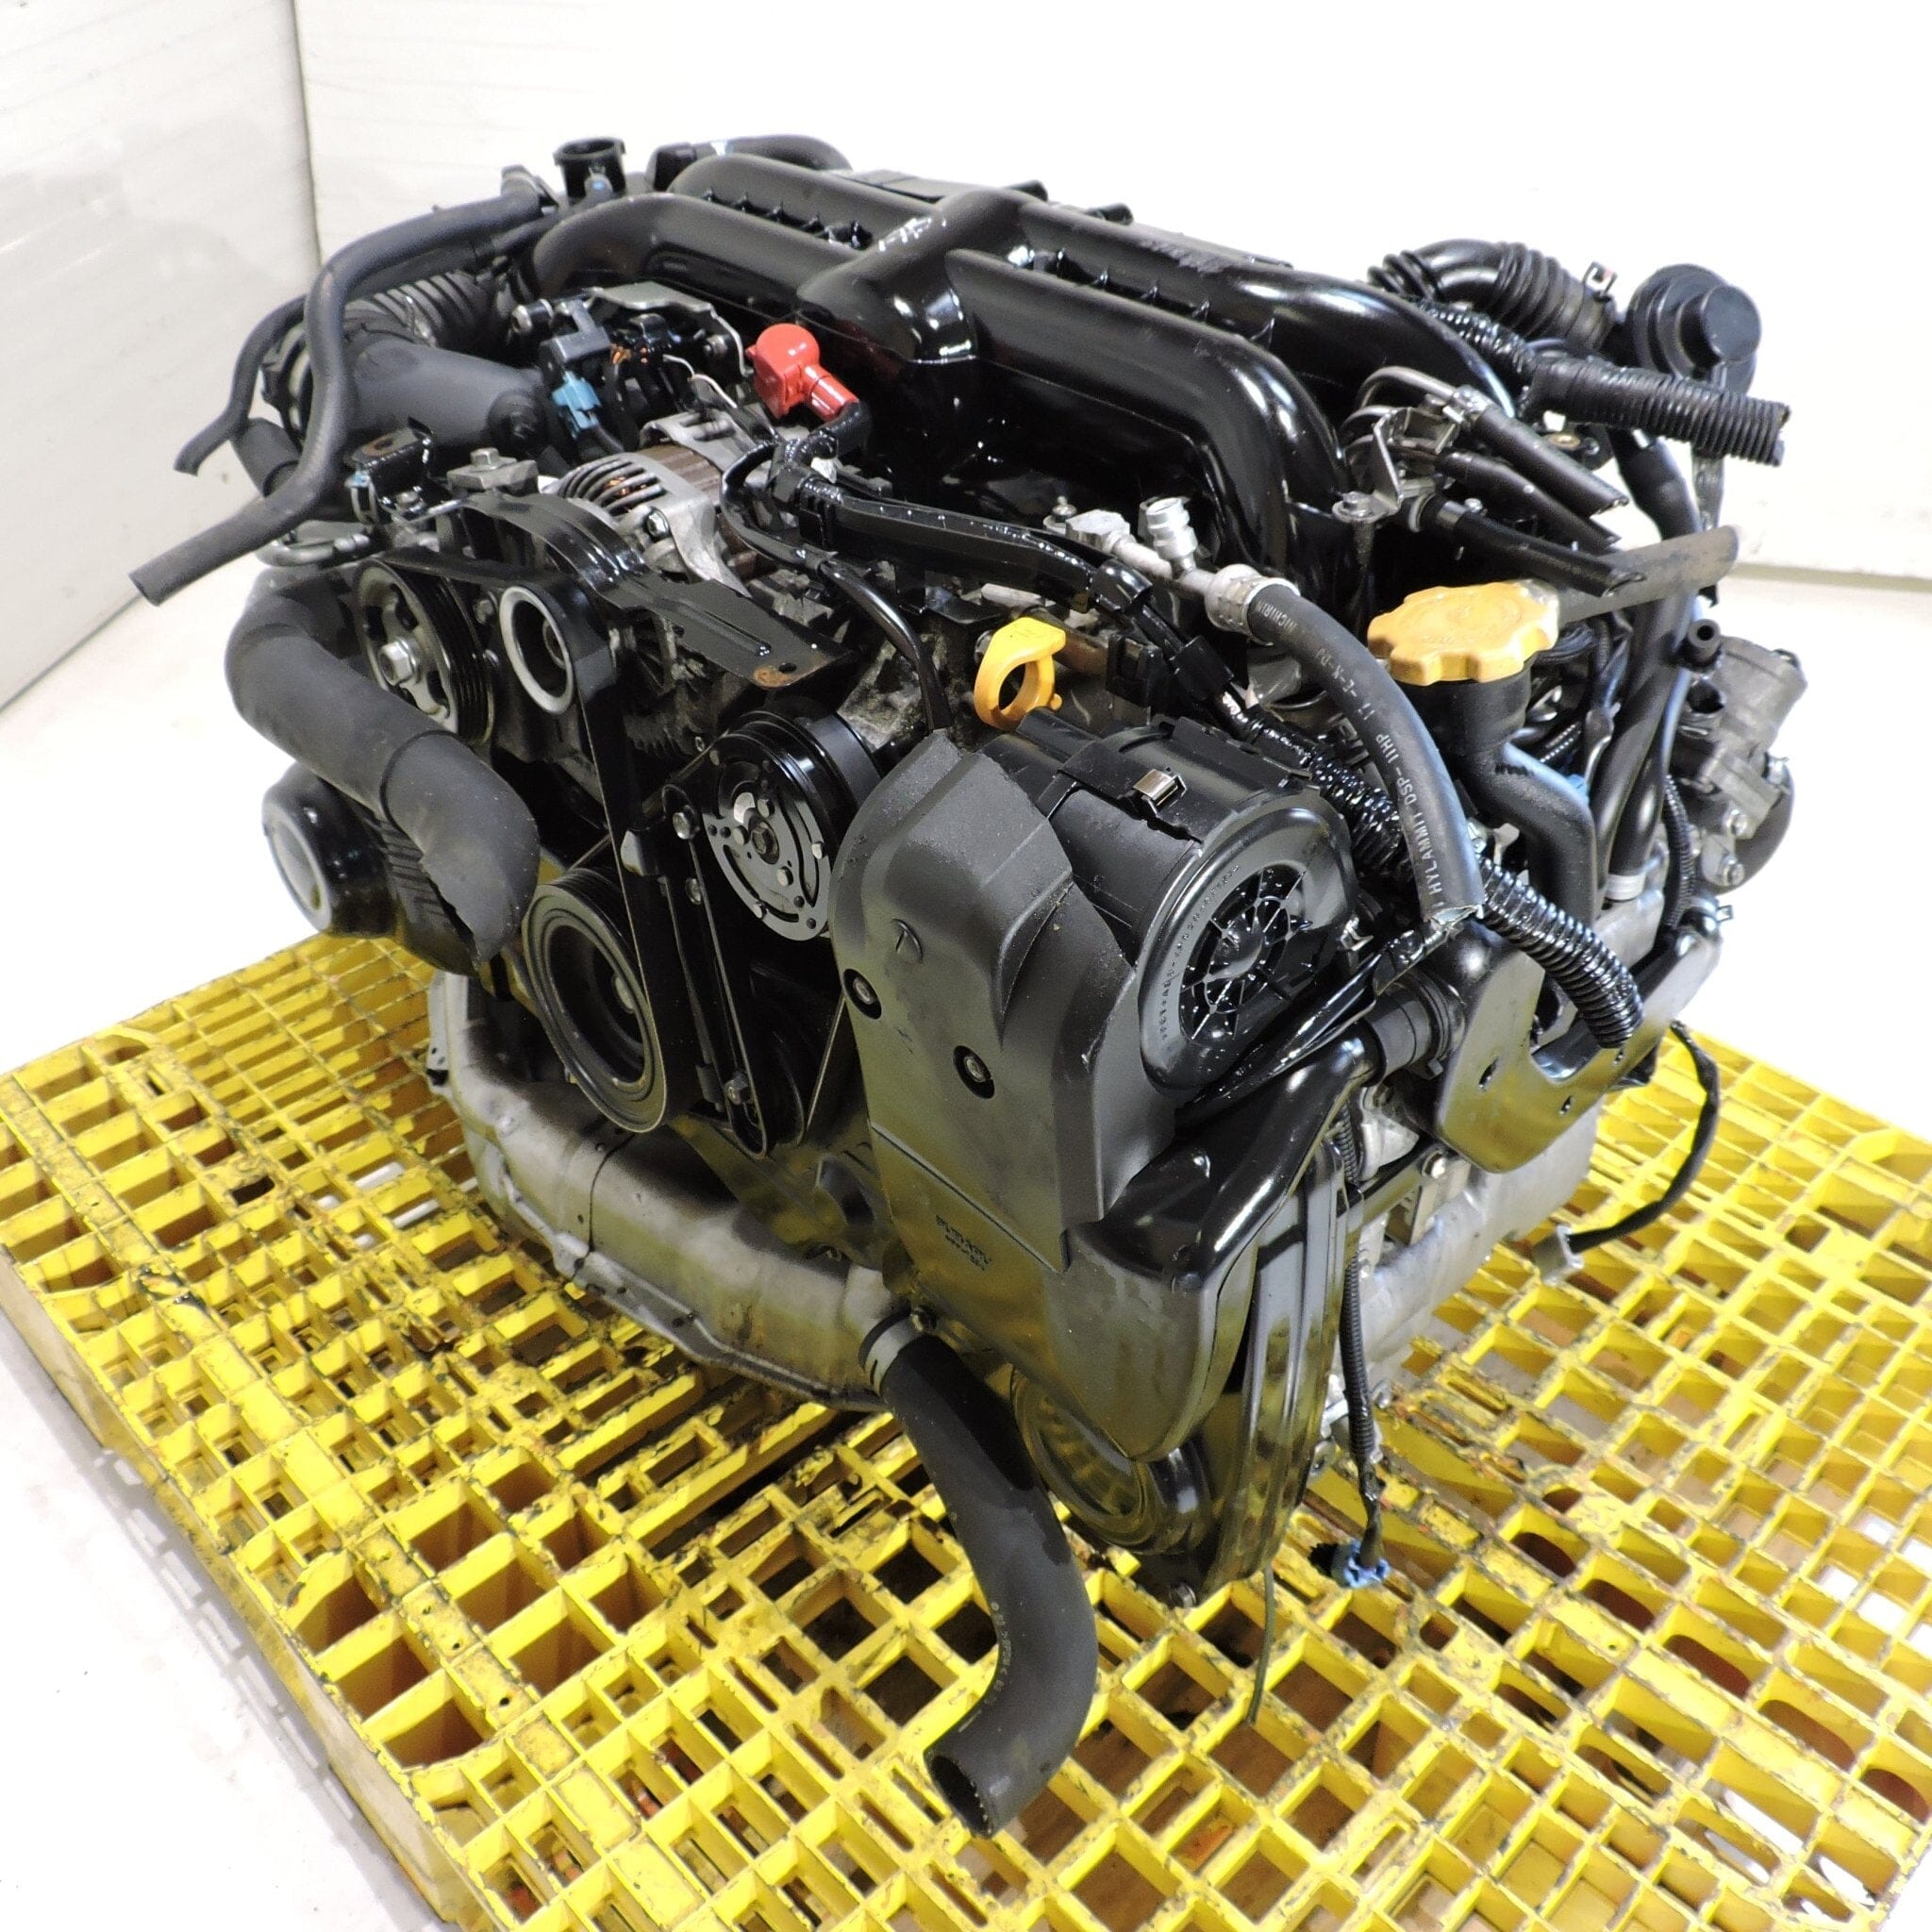 Subaru Impreza Wrx 2006-2012 2.0L Turbo Jdm Engine - EJ20X